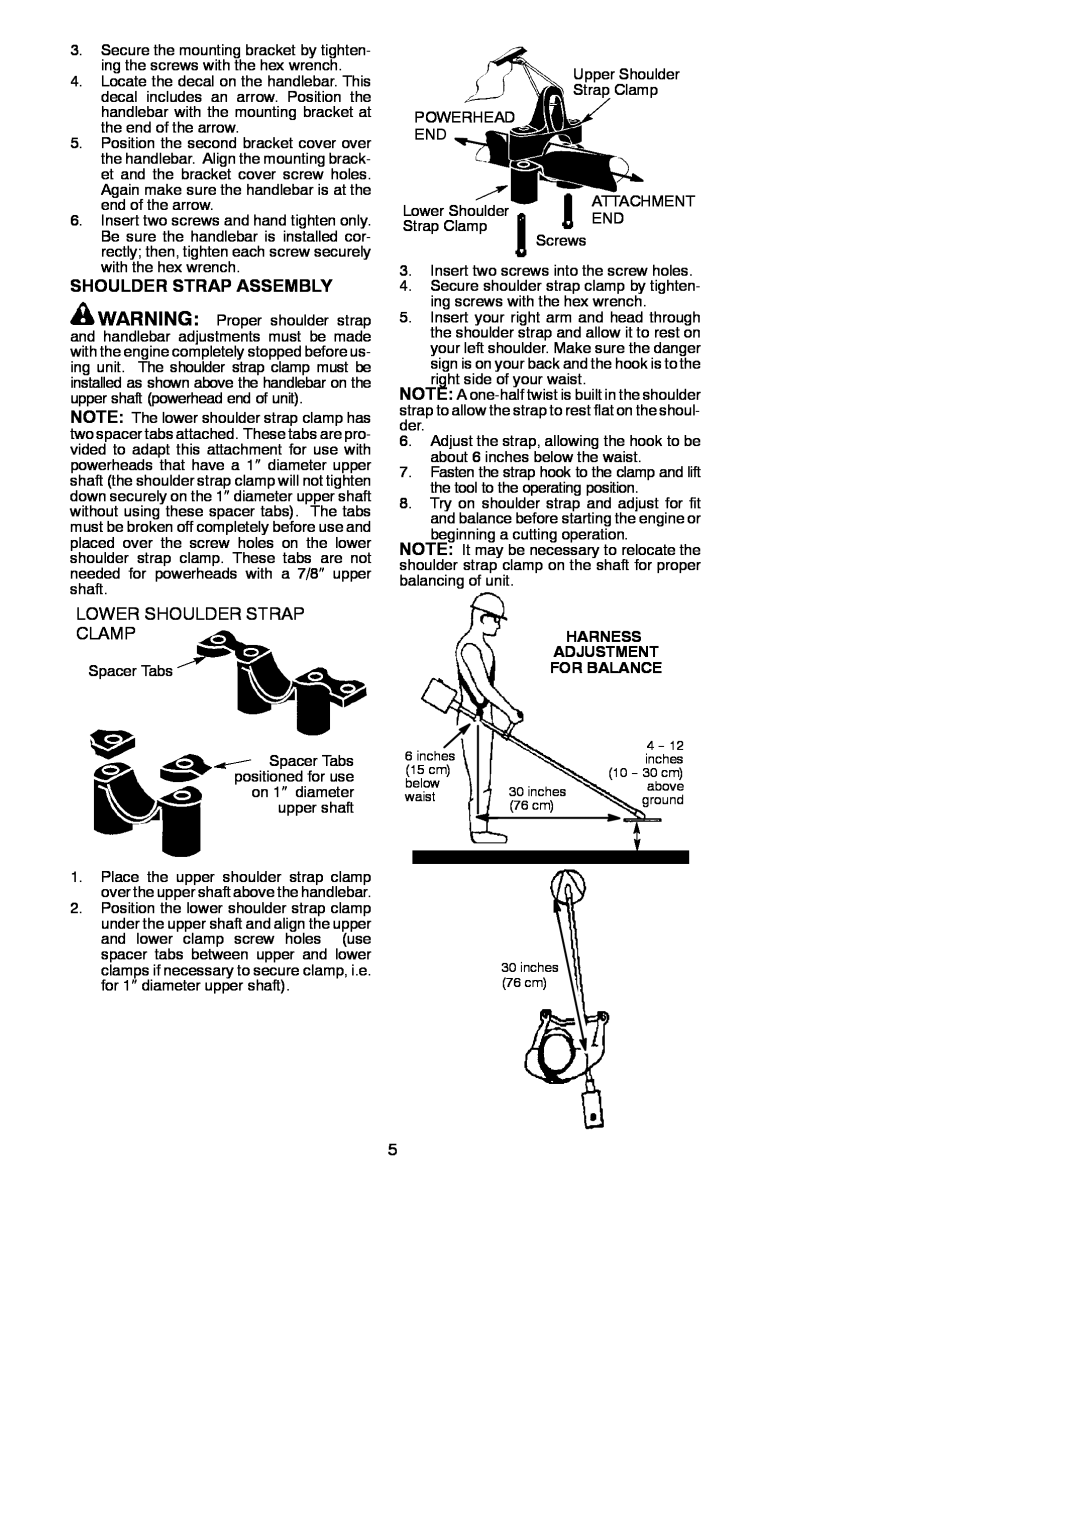 Weed Eater 530164835 instruction manual Shoulder Strap Assembly, Lower Shoulder Strap Clamp, Harness Adjustment For Balance 